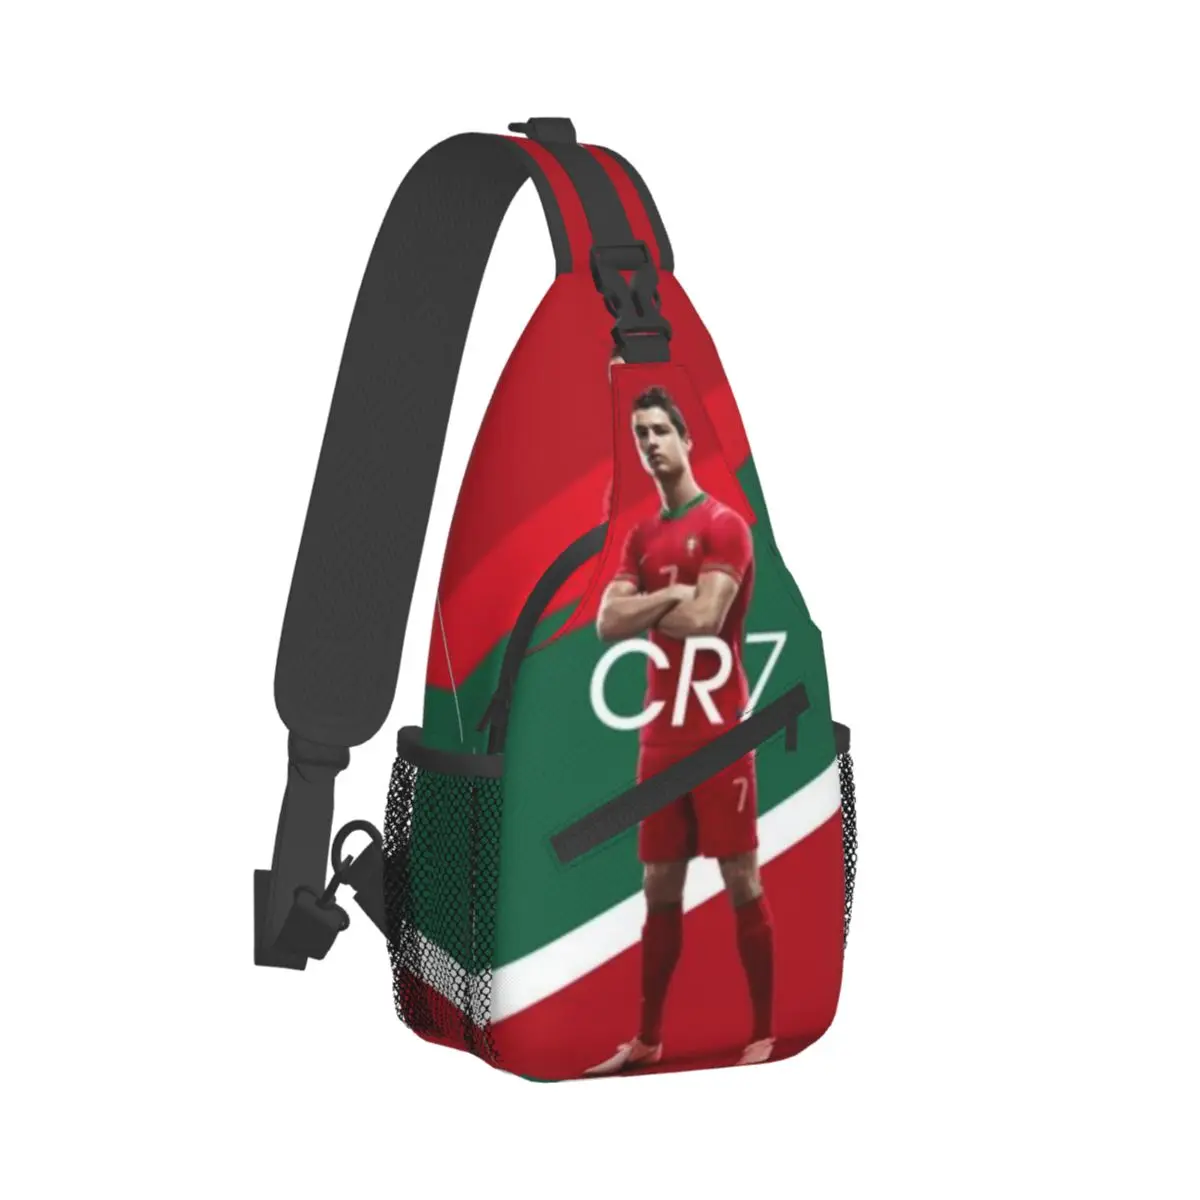 

Маленькая слинг-сумка Cr7 для футбола Криштиану Роналду, нагрудной кросс-боди слинг на плечо, походный дорожный рюкзак, ранец с узором